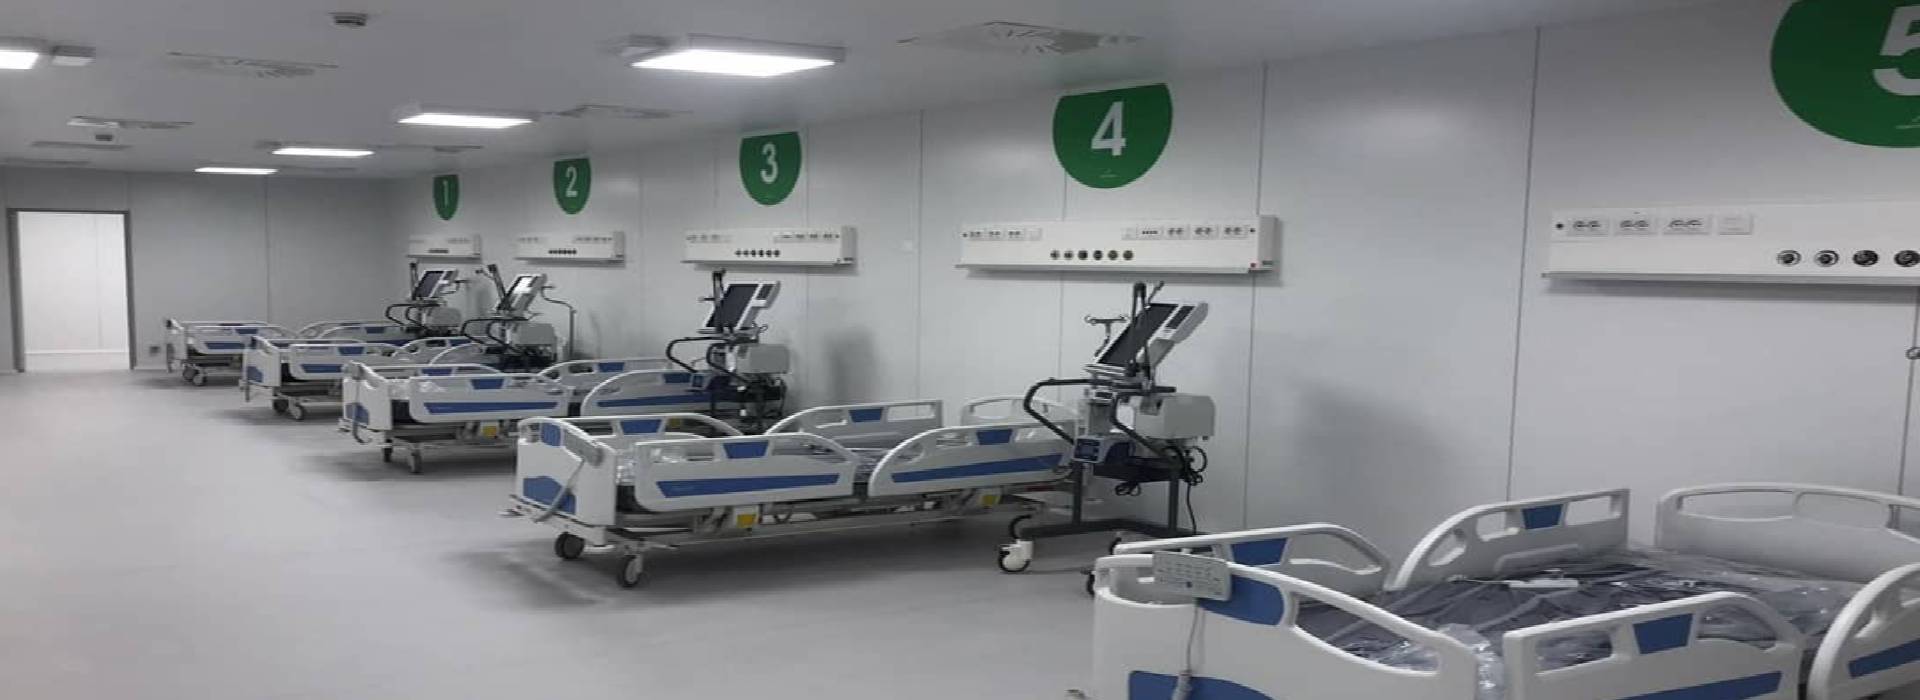 L'ospedale Fiera Milano costruito in 10 giorni grazie ai finanziamenti privati